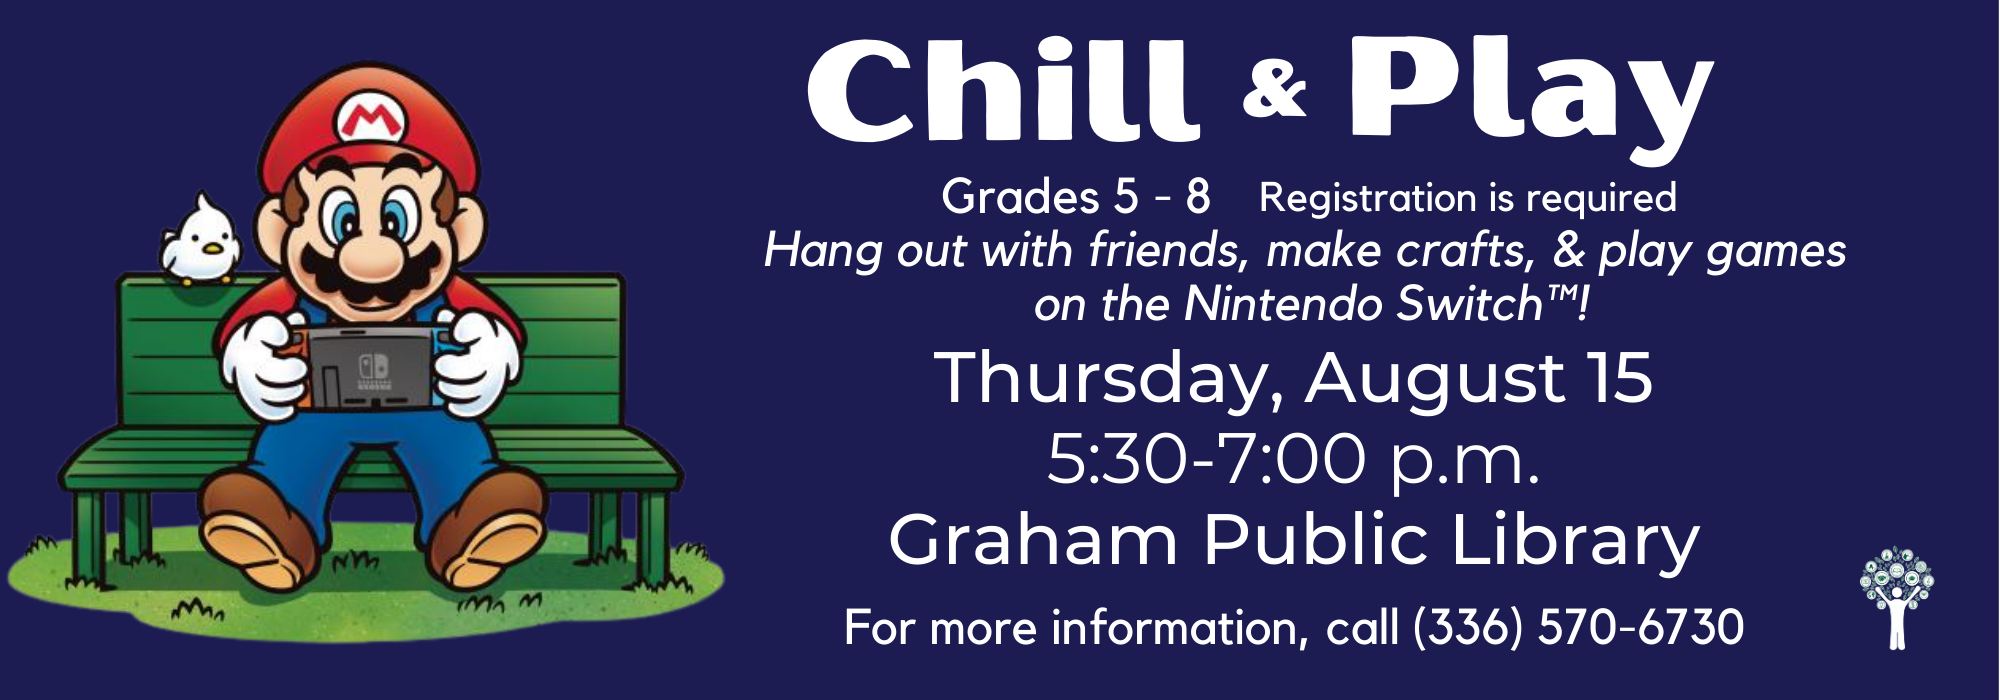 8.15 at 530 pm - Chill & Play at Graham